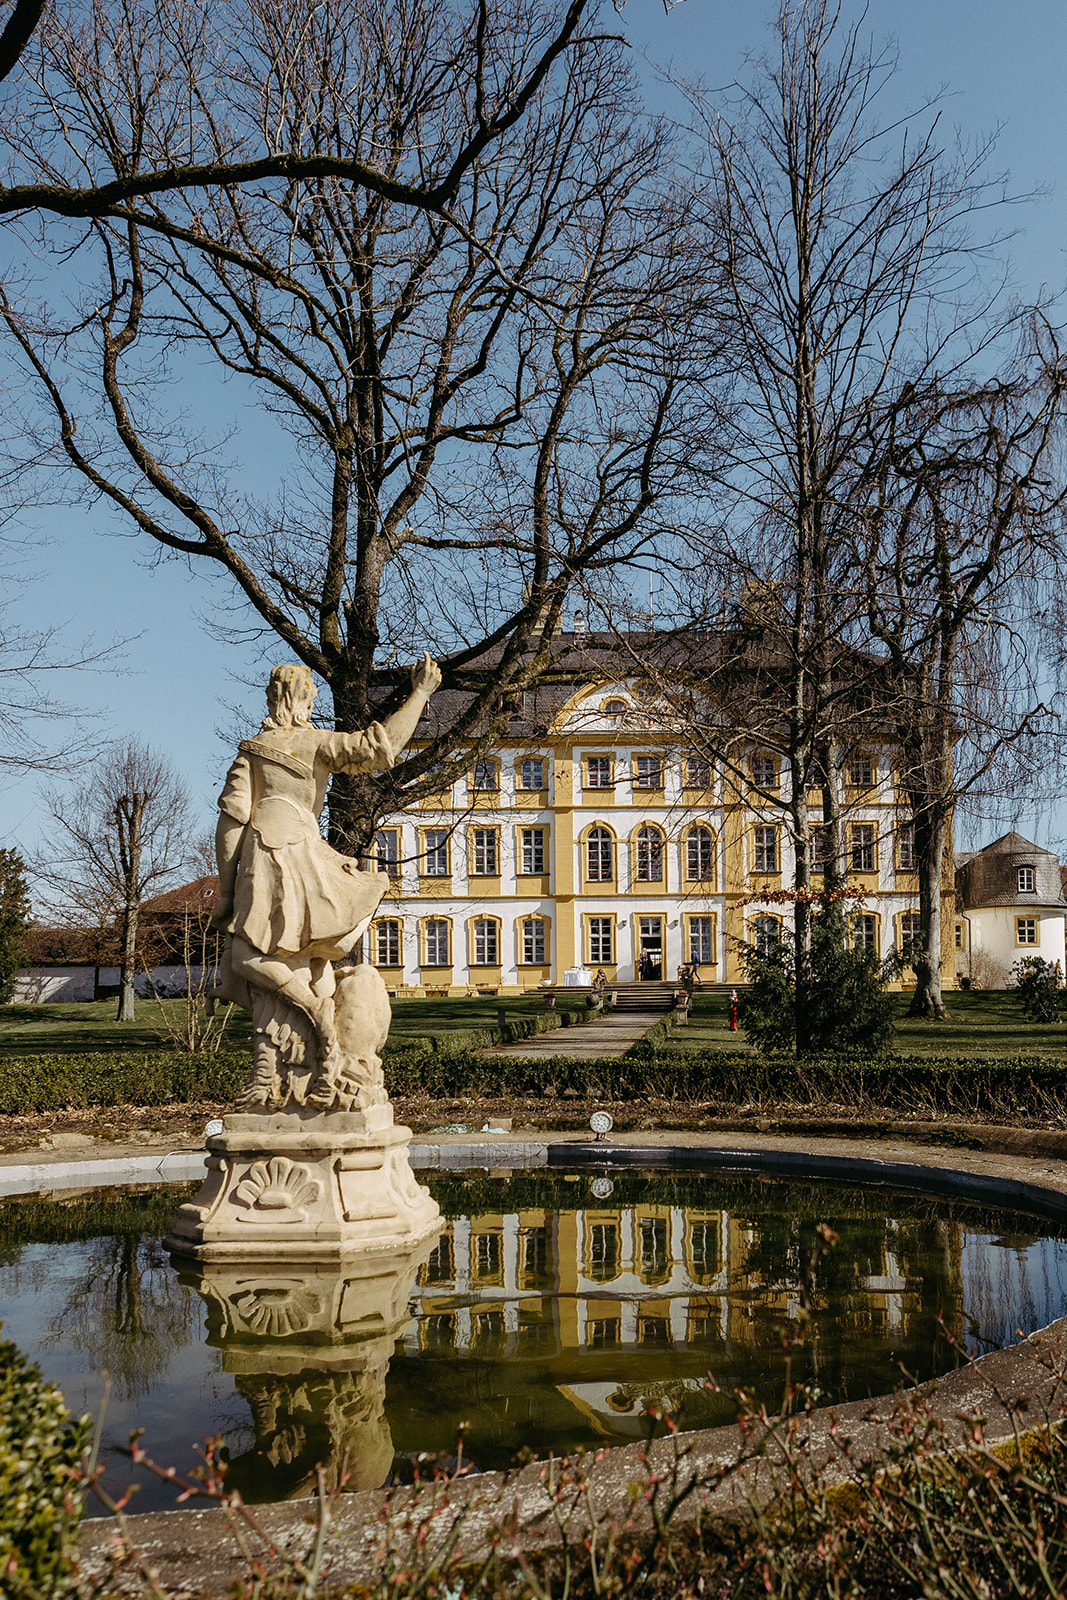 Bild zeigt das majestätische Schloss Jägersburg, eine traumhafte Kulisse für unvergessliche und romantische Hochzeiten.